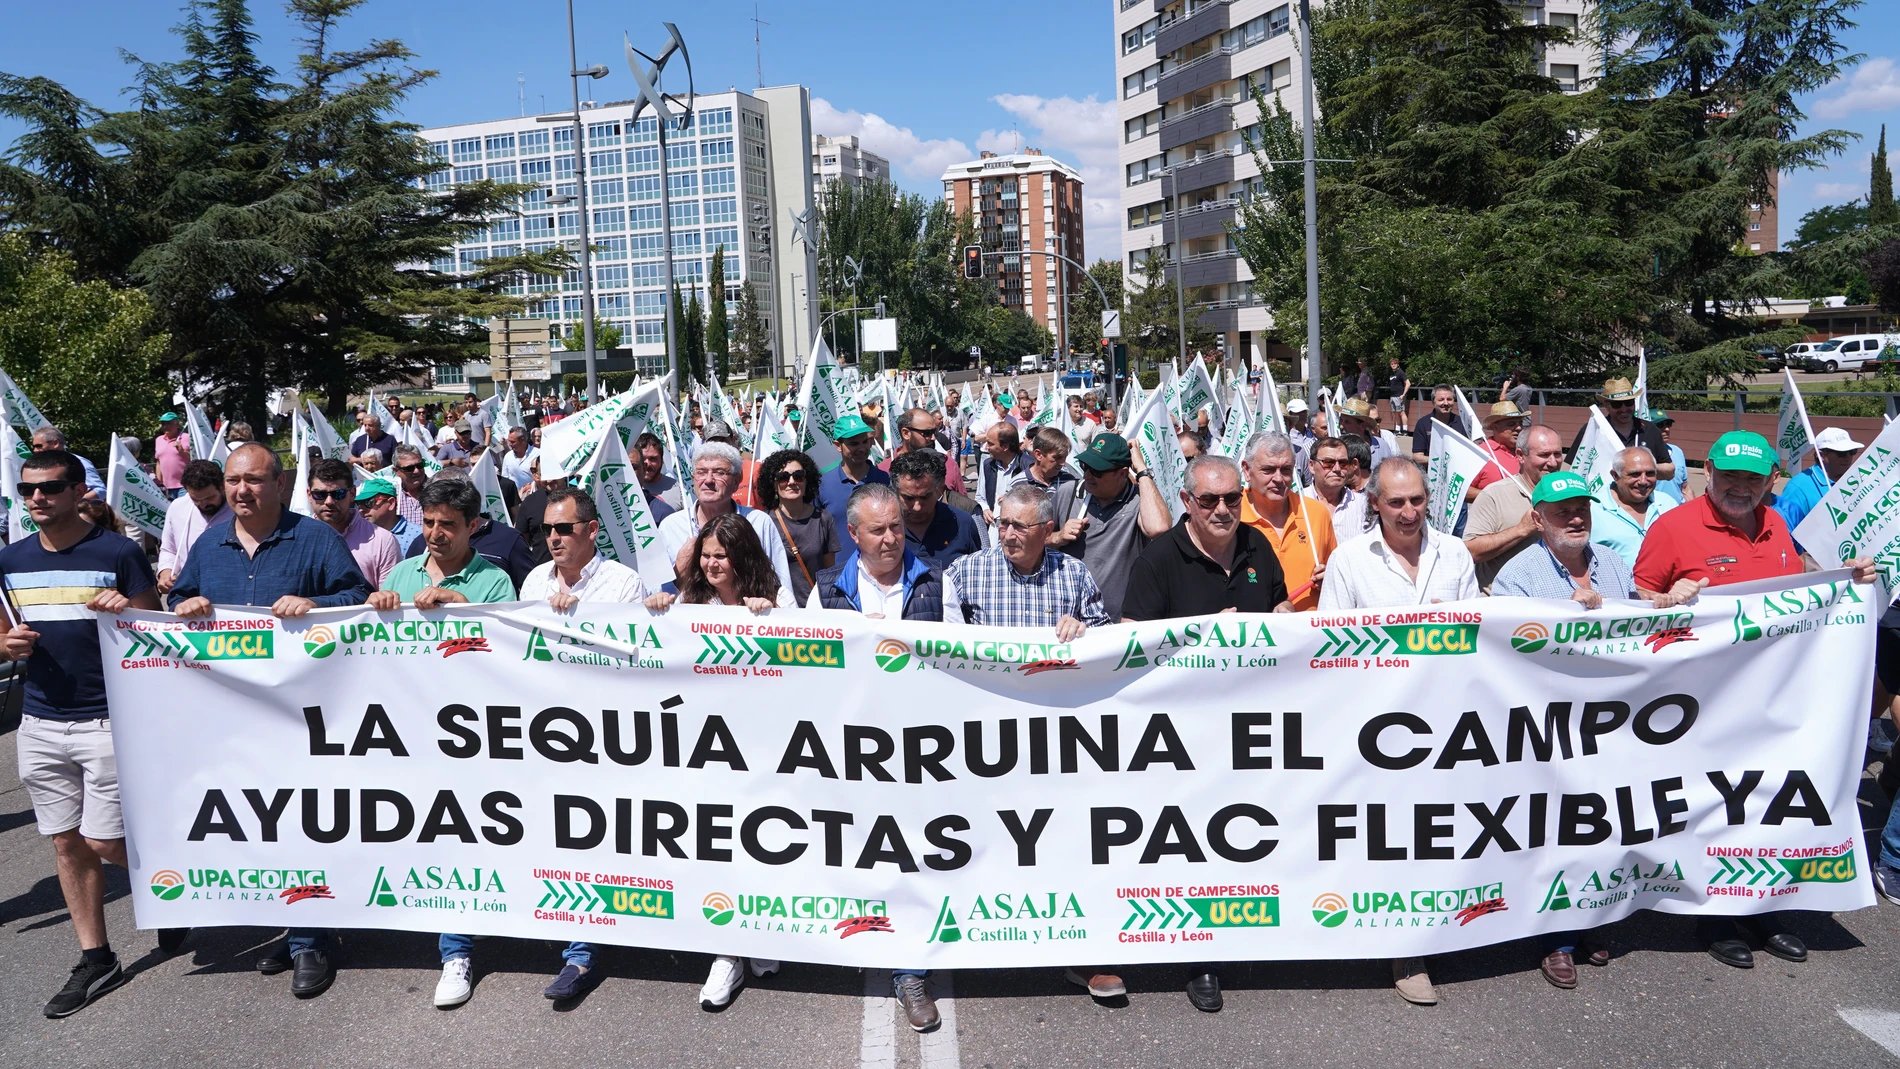 Protestas de agricultores y ganaderos en las calles de Valladolid